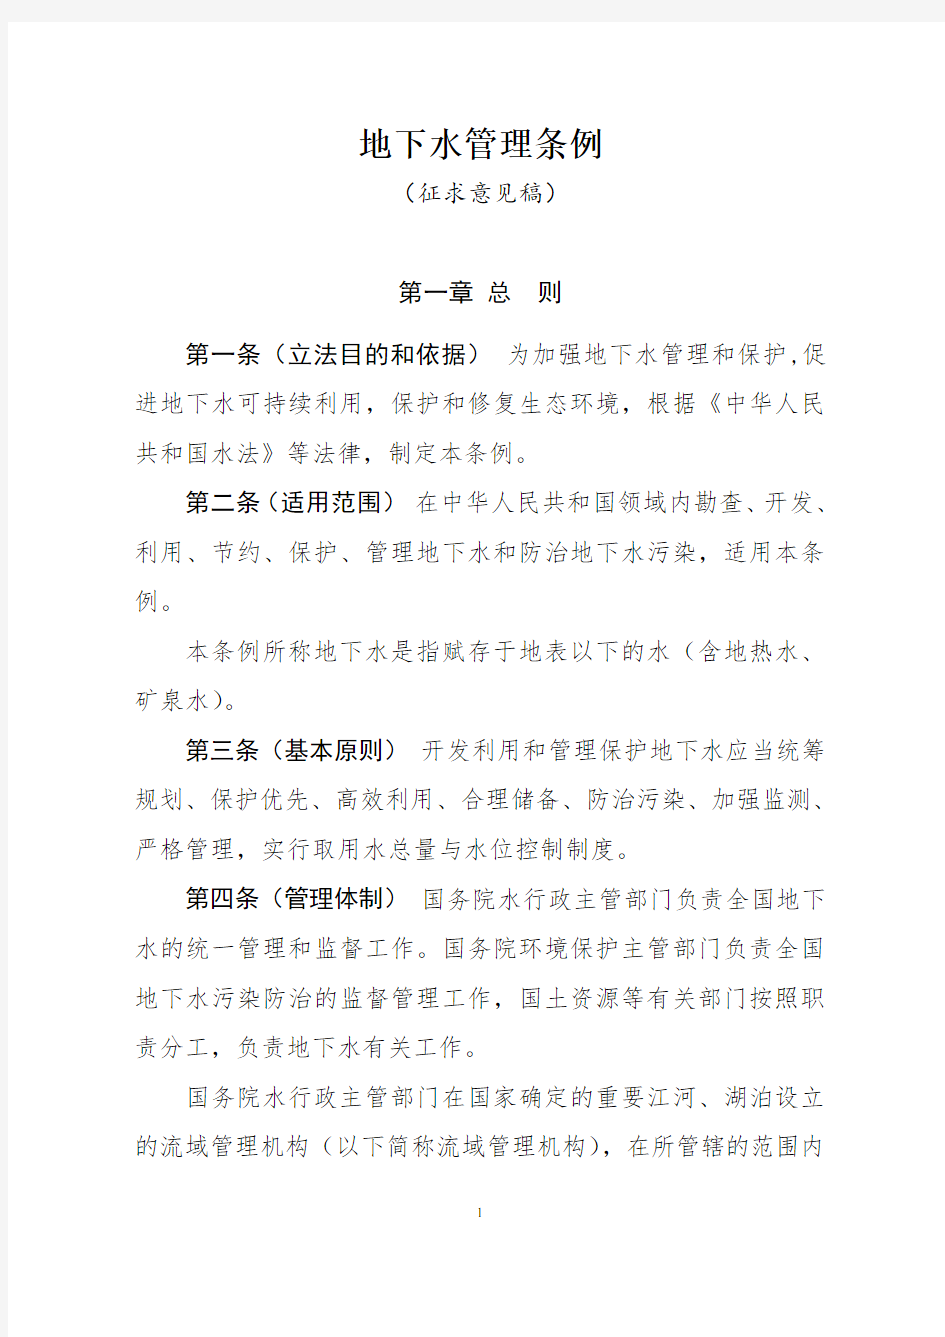 地下水管理条例-中华人民共和国水利部